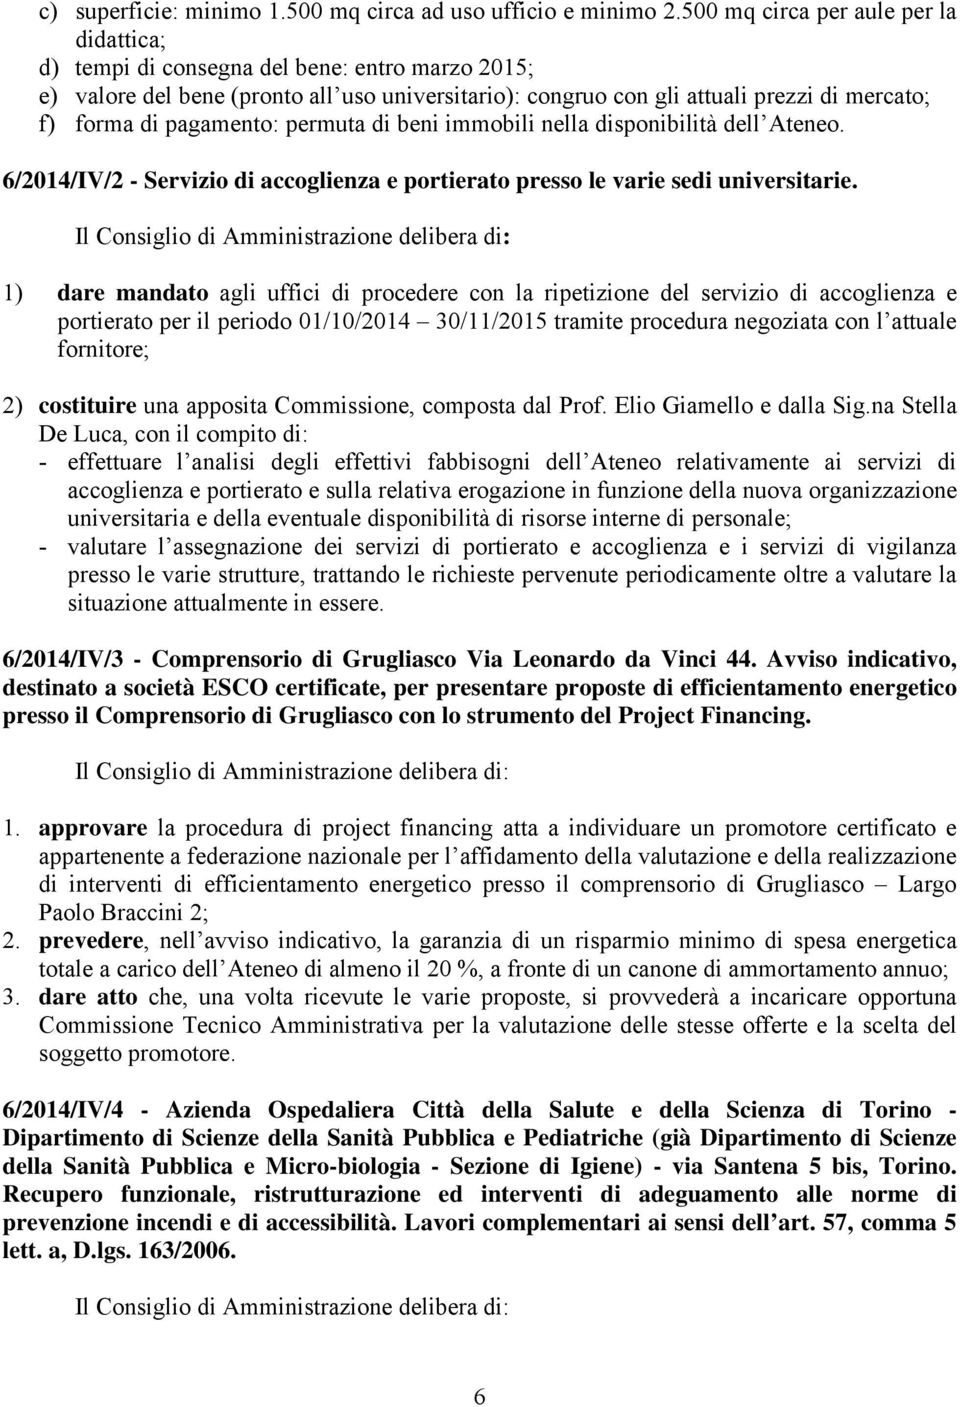 pagamento: permuta di beni immobili nella disponibilità dell Ateneo. 6/2014/IV/2 - Servizio di accoglienza e portierato presso le varie sedi universitarie.